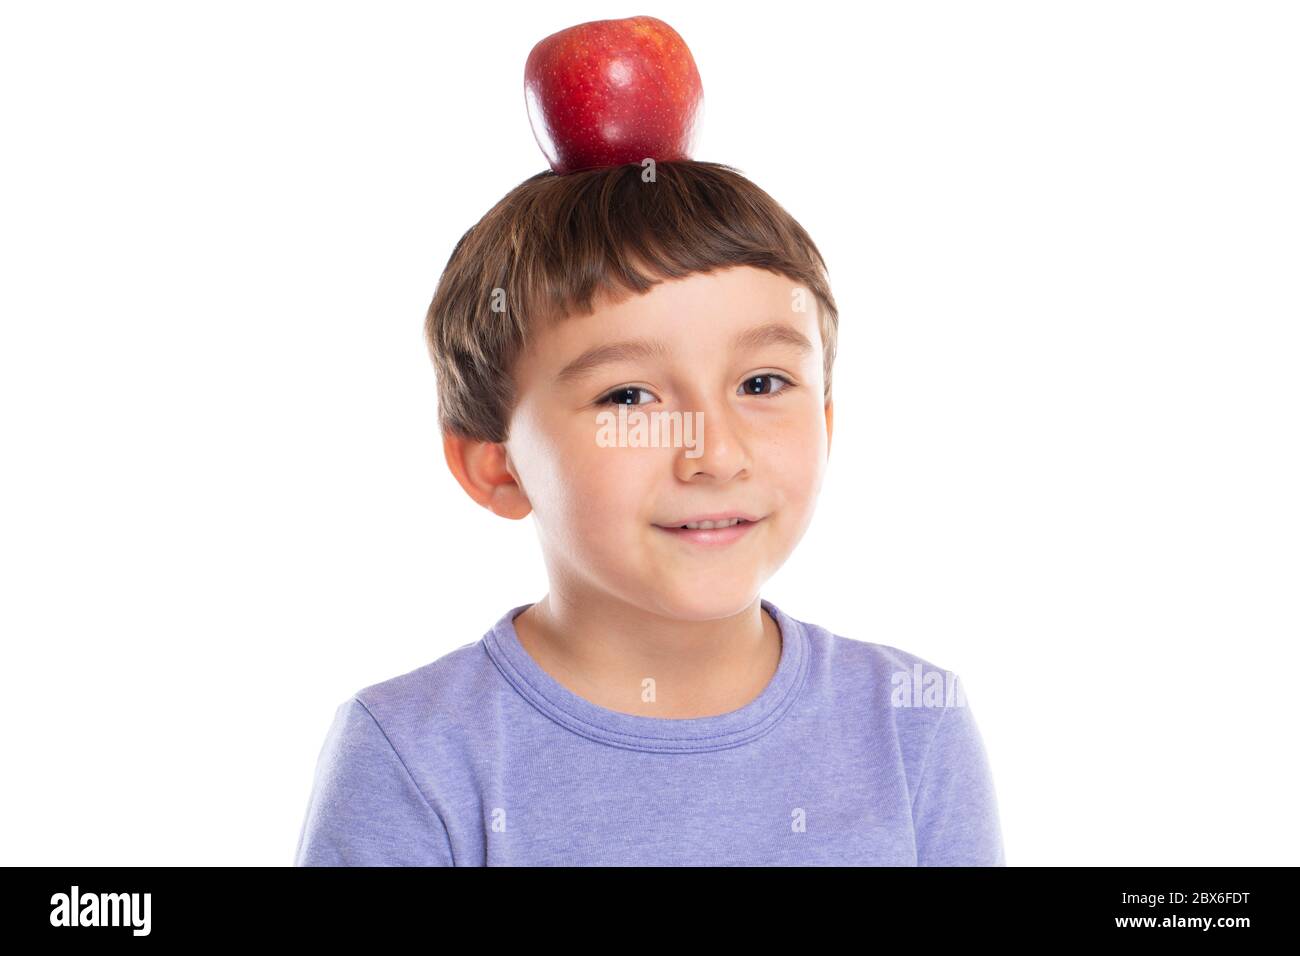 Bambino giovane con mela rossa sulla testa concetto di alimentazione sana isolato su sfondo bianco Foto Stock